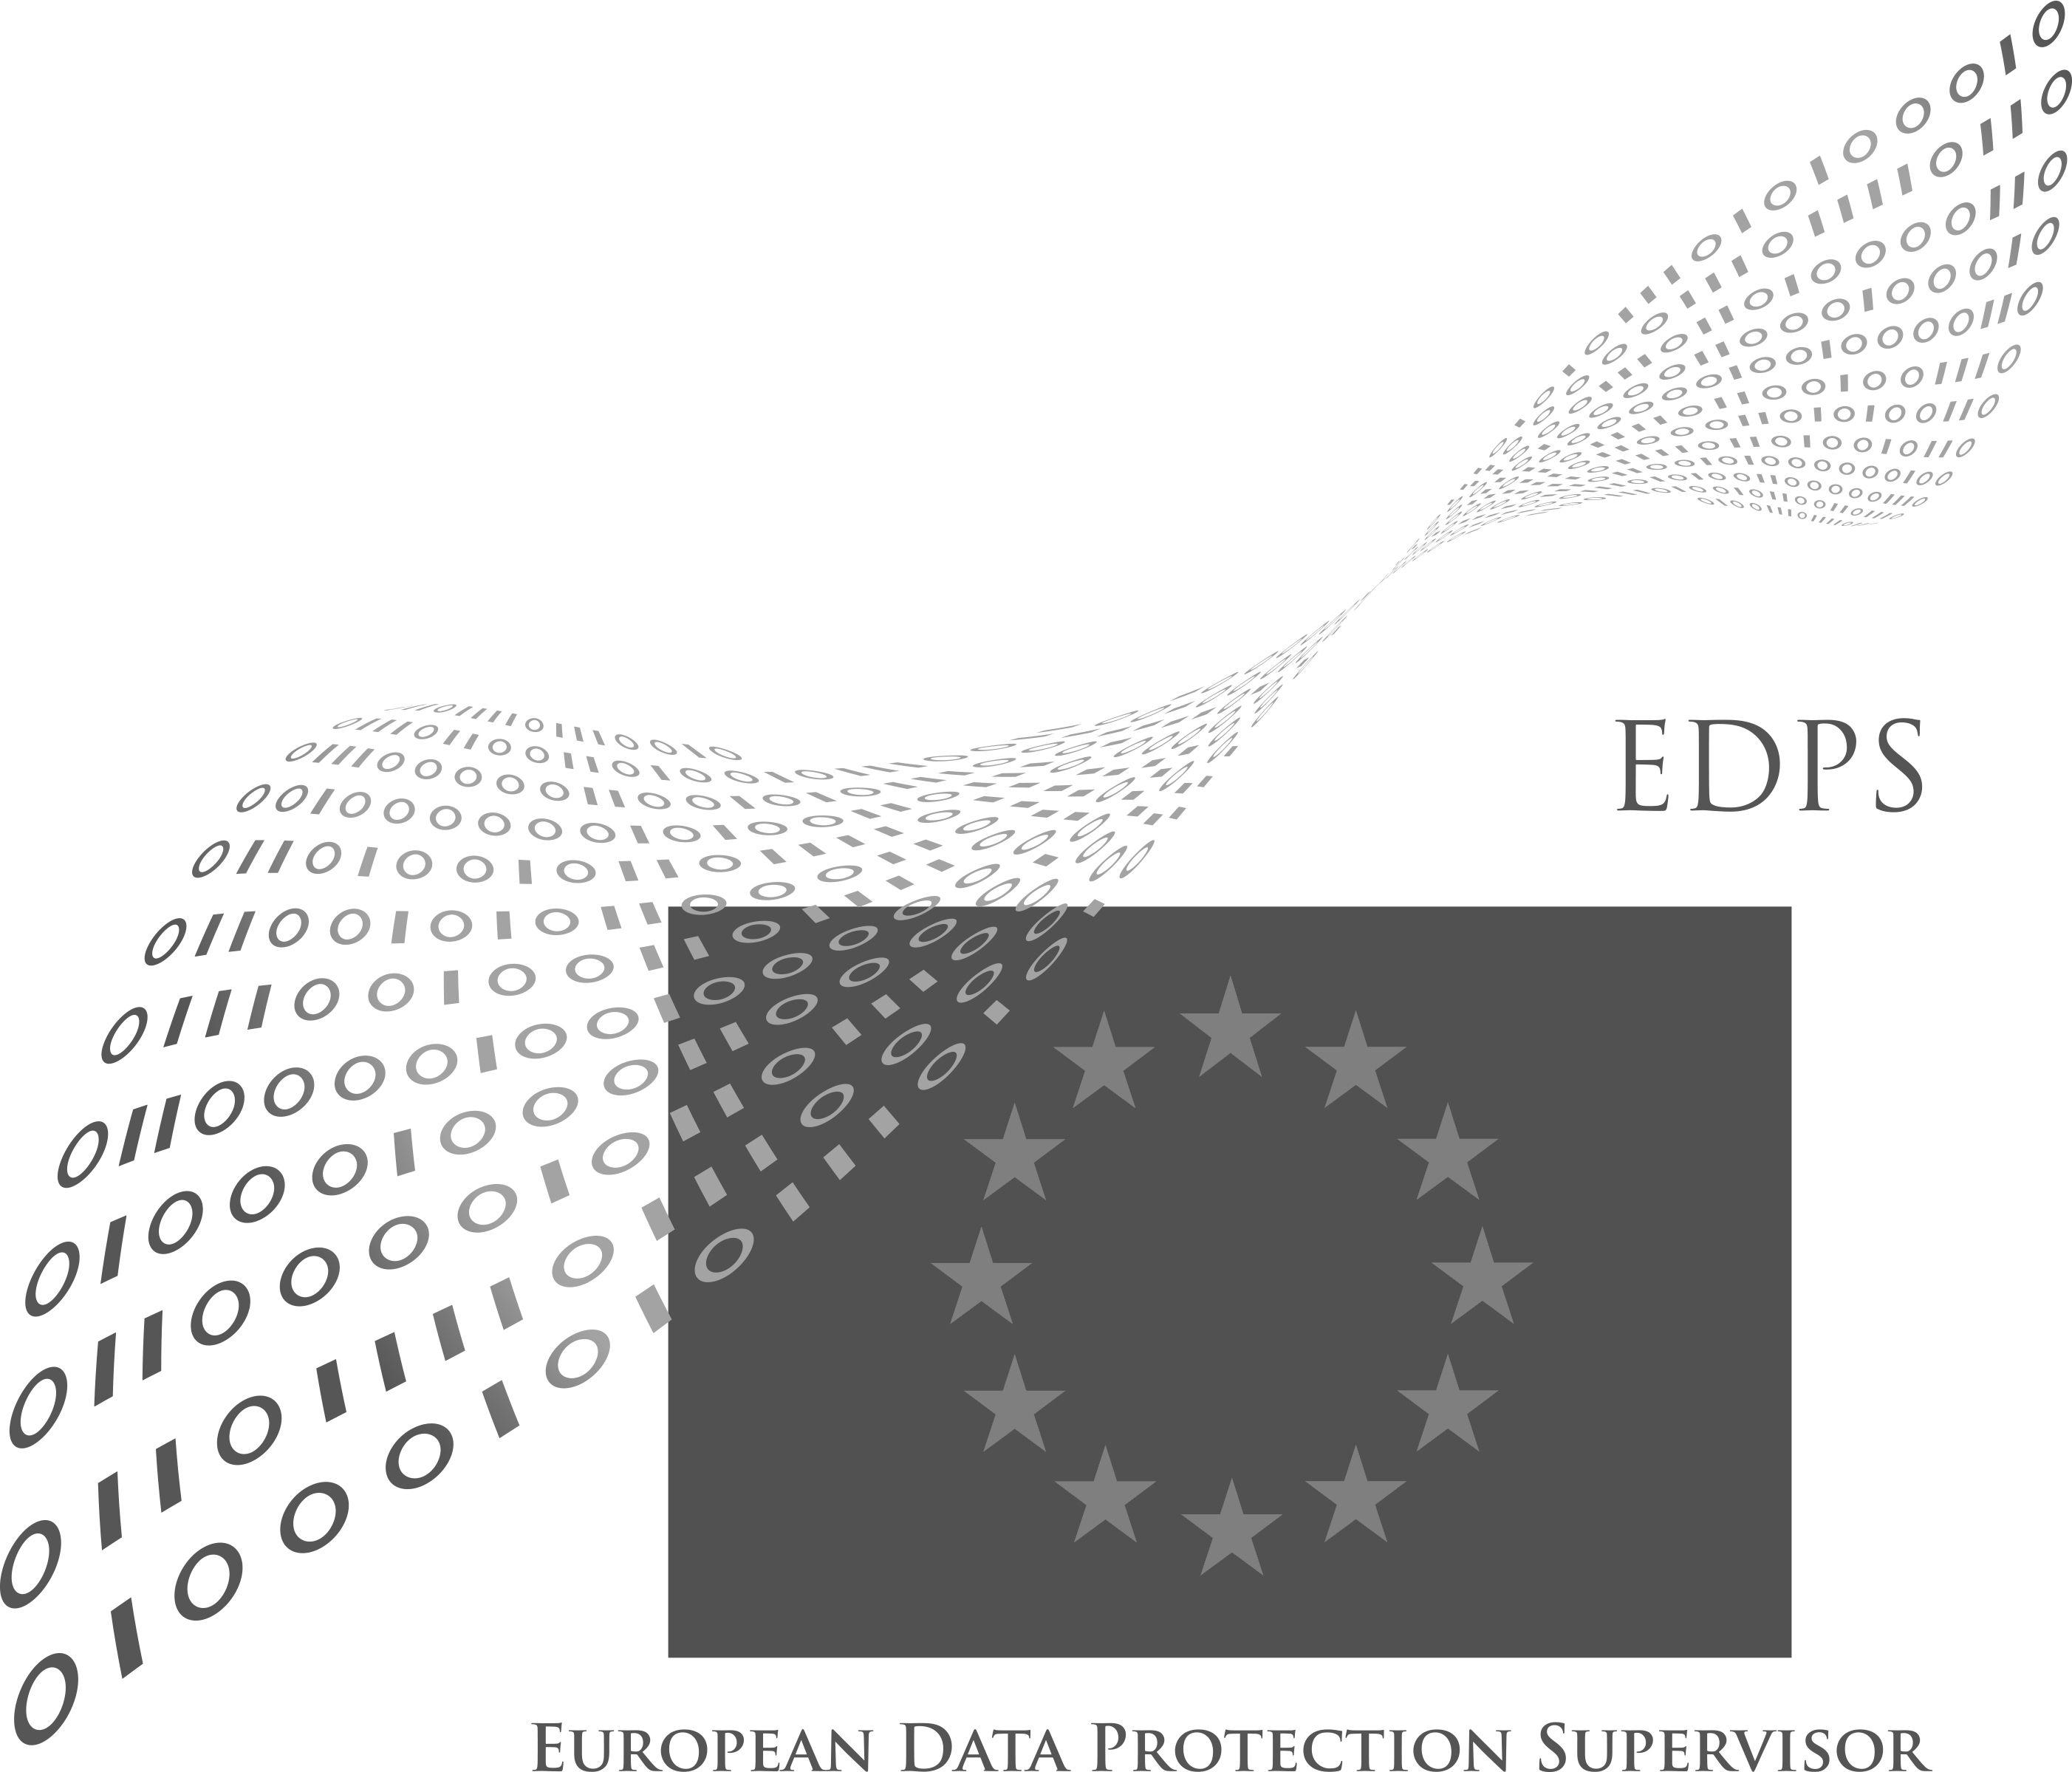 Supervisor Logo - EDPS logo guidelines. European Data Protection Supervisor